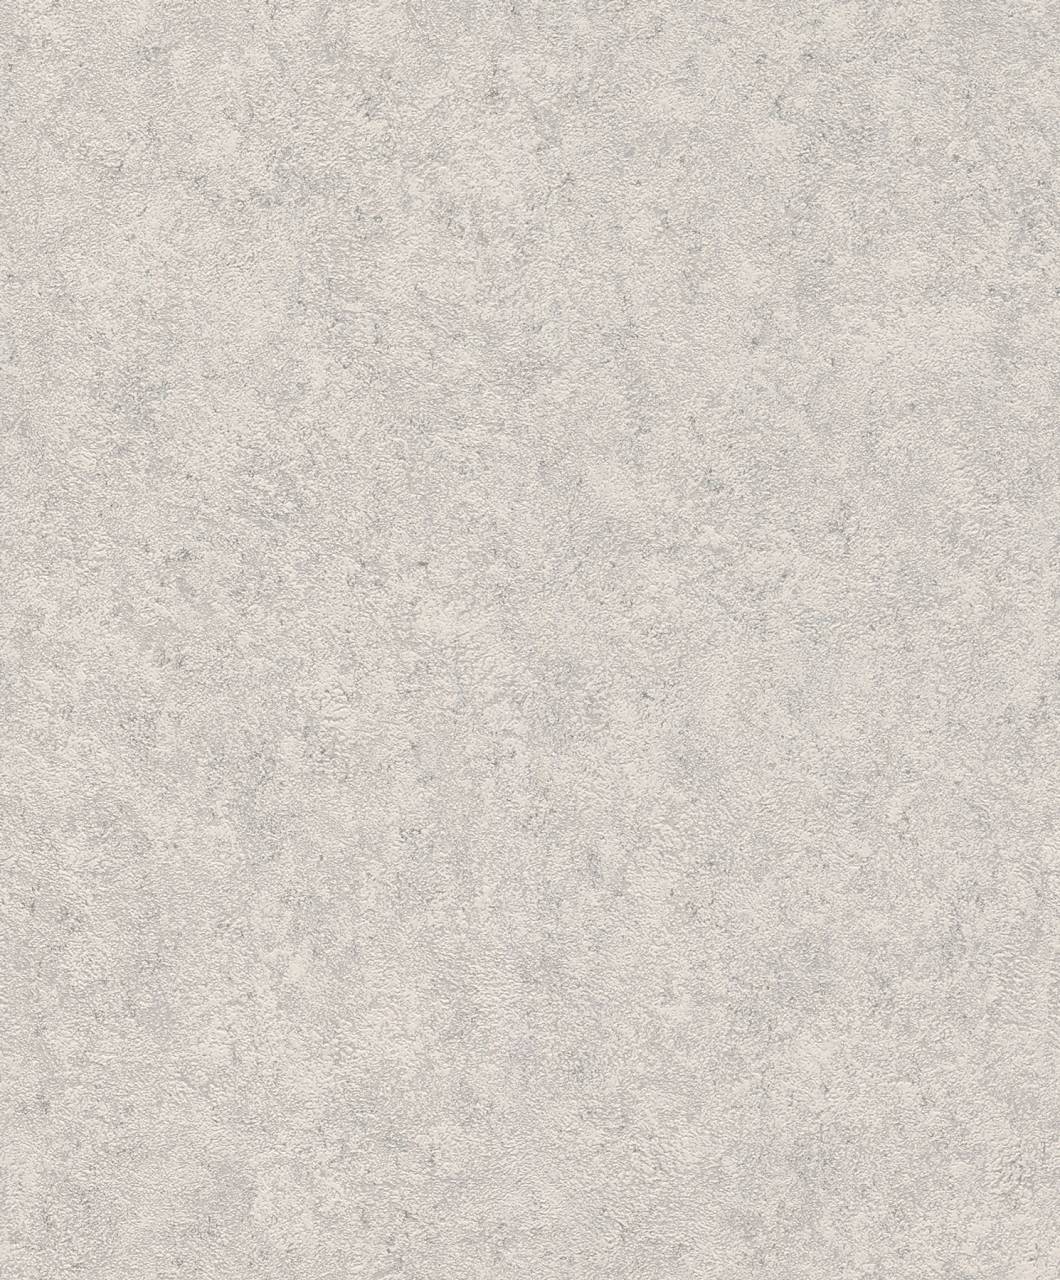 Quickly fleece wallpaper Welcome home gray-concrete gray 649321